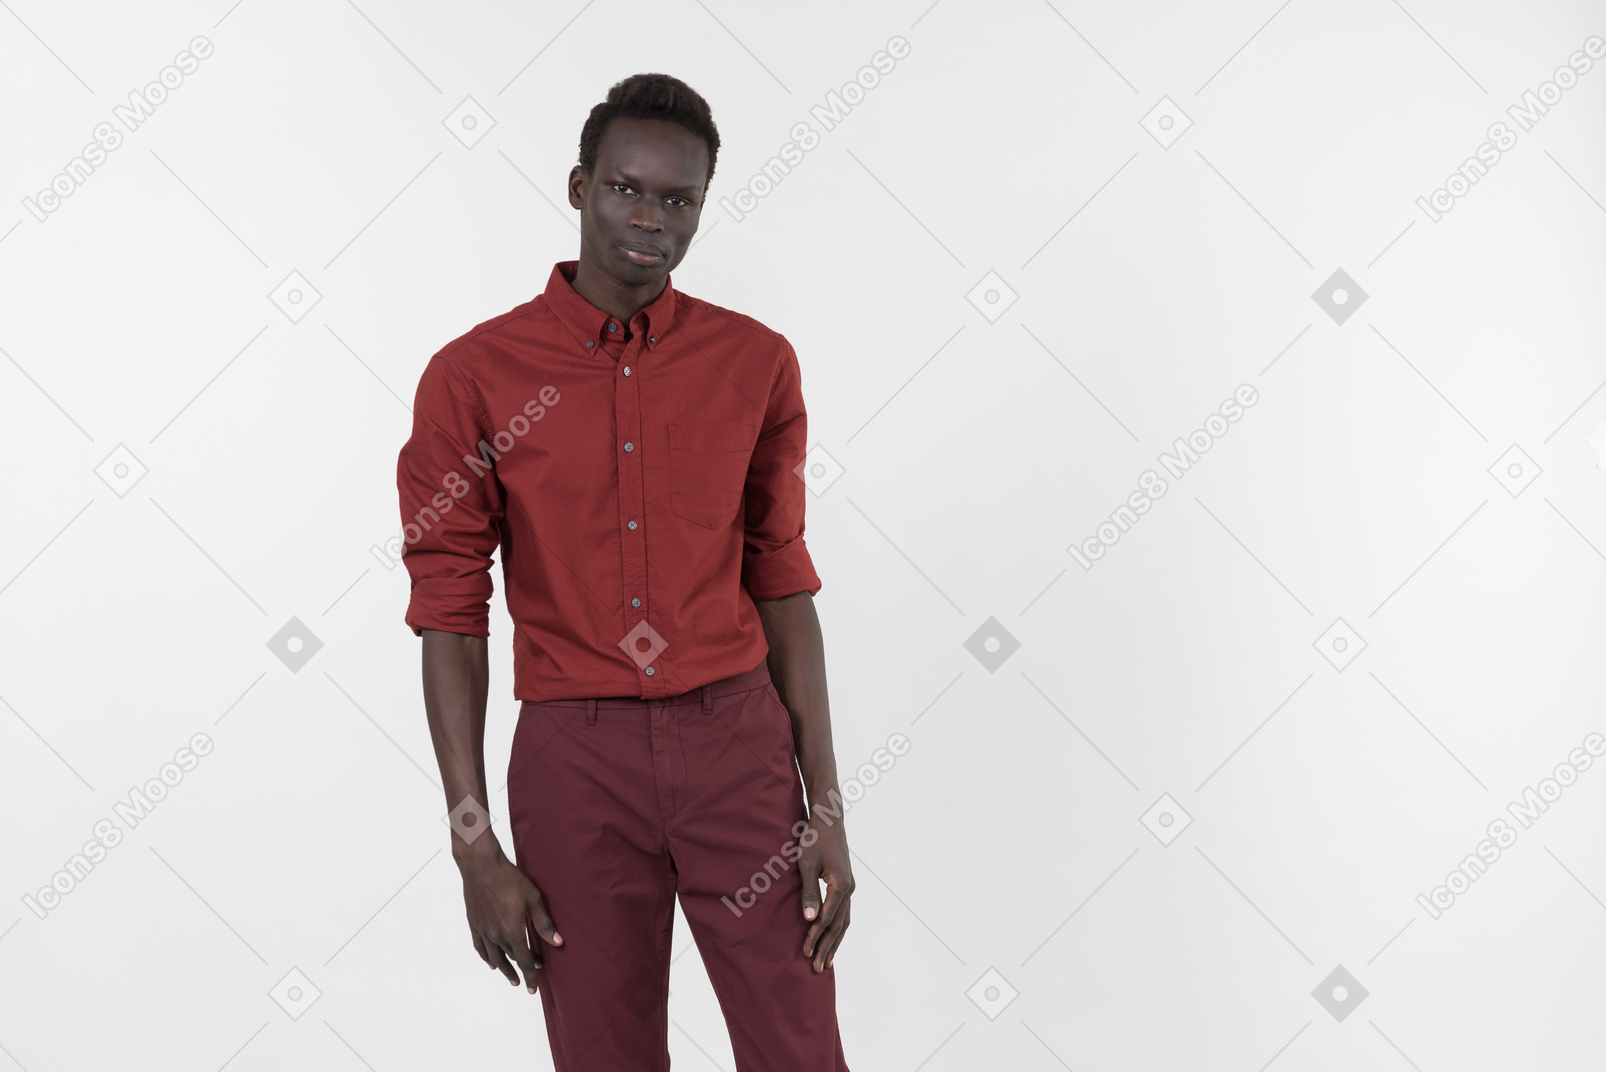 Темнокожий мужчина в красной рубашке с закатанными рукавами и темно-красными брюками стоит один на белом фоне